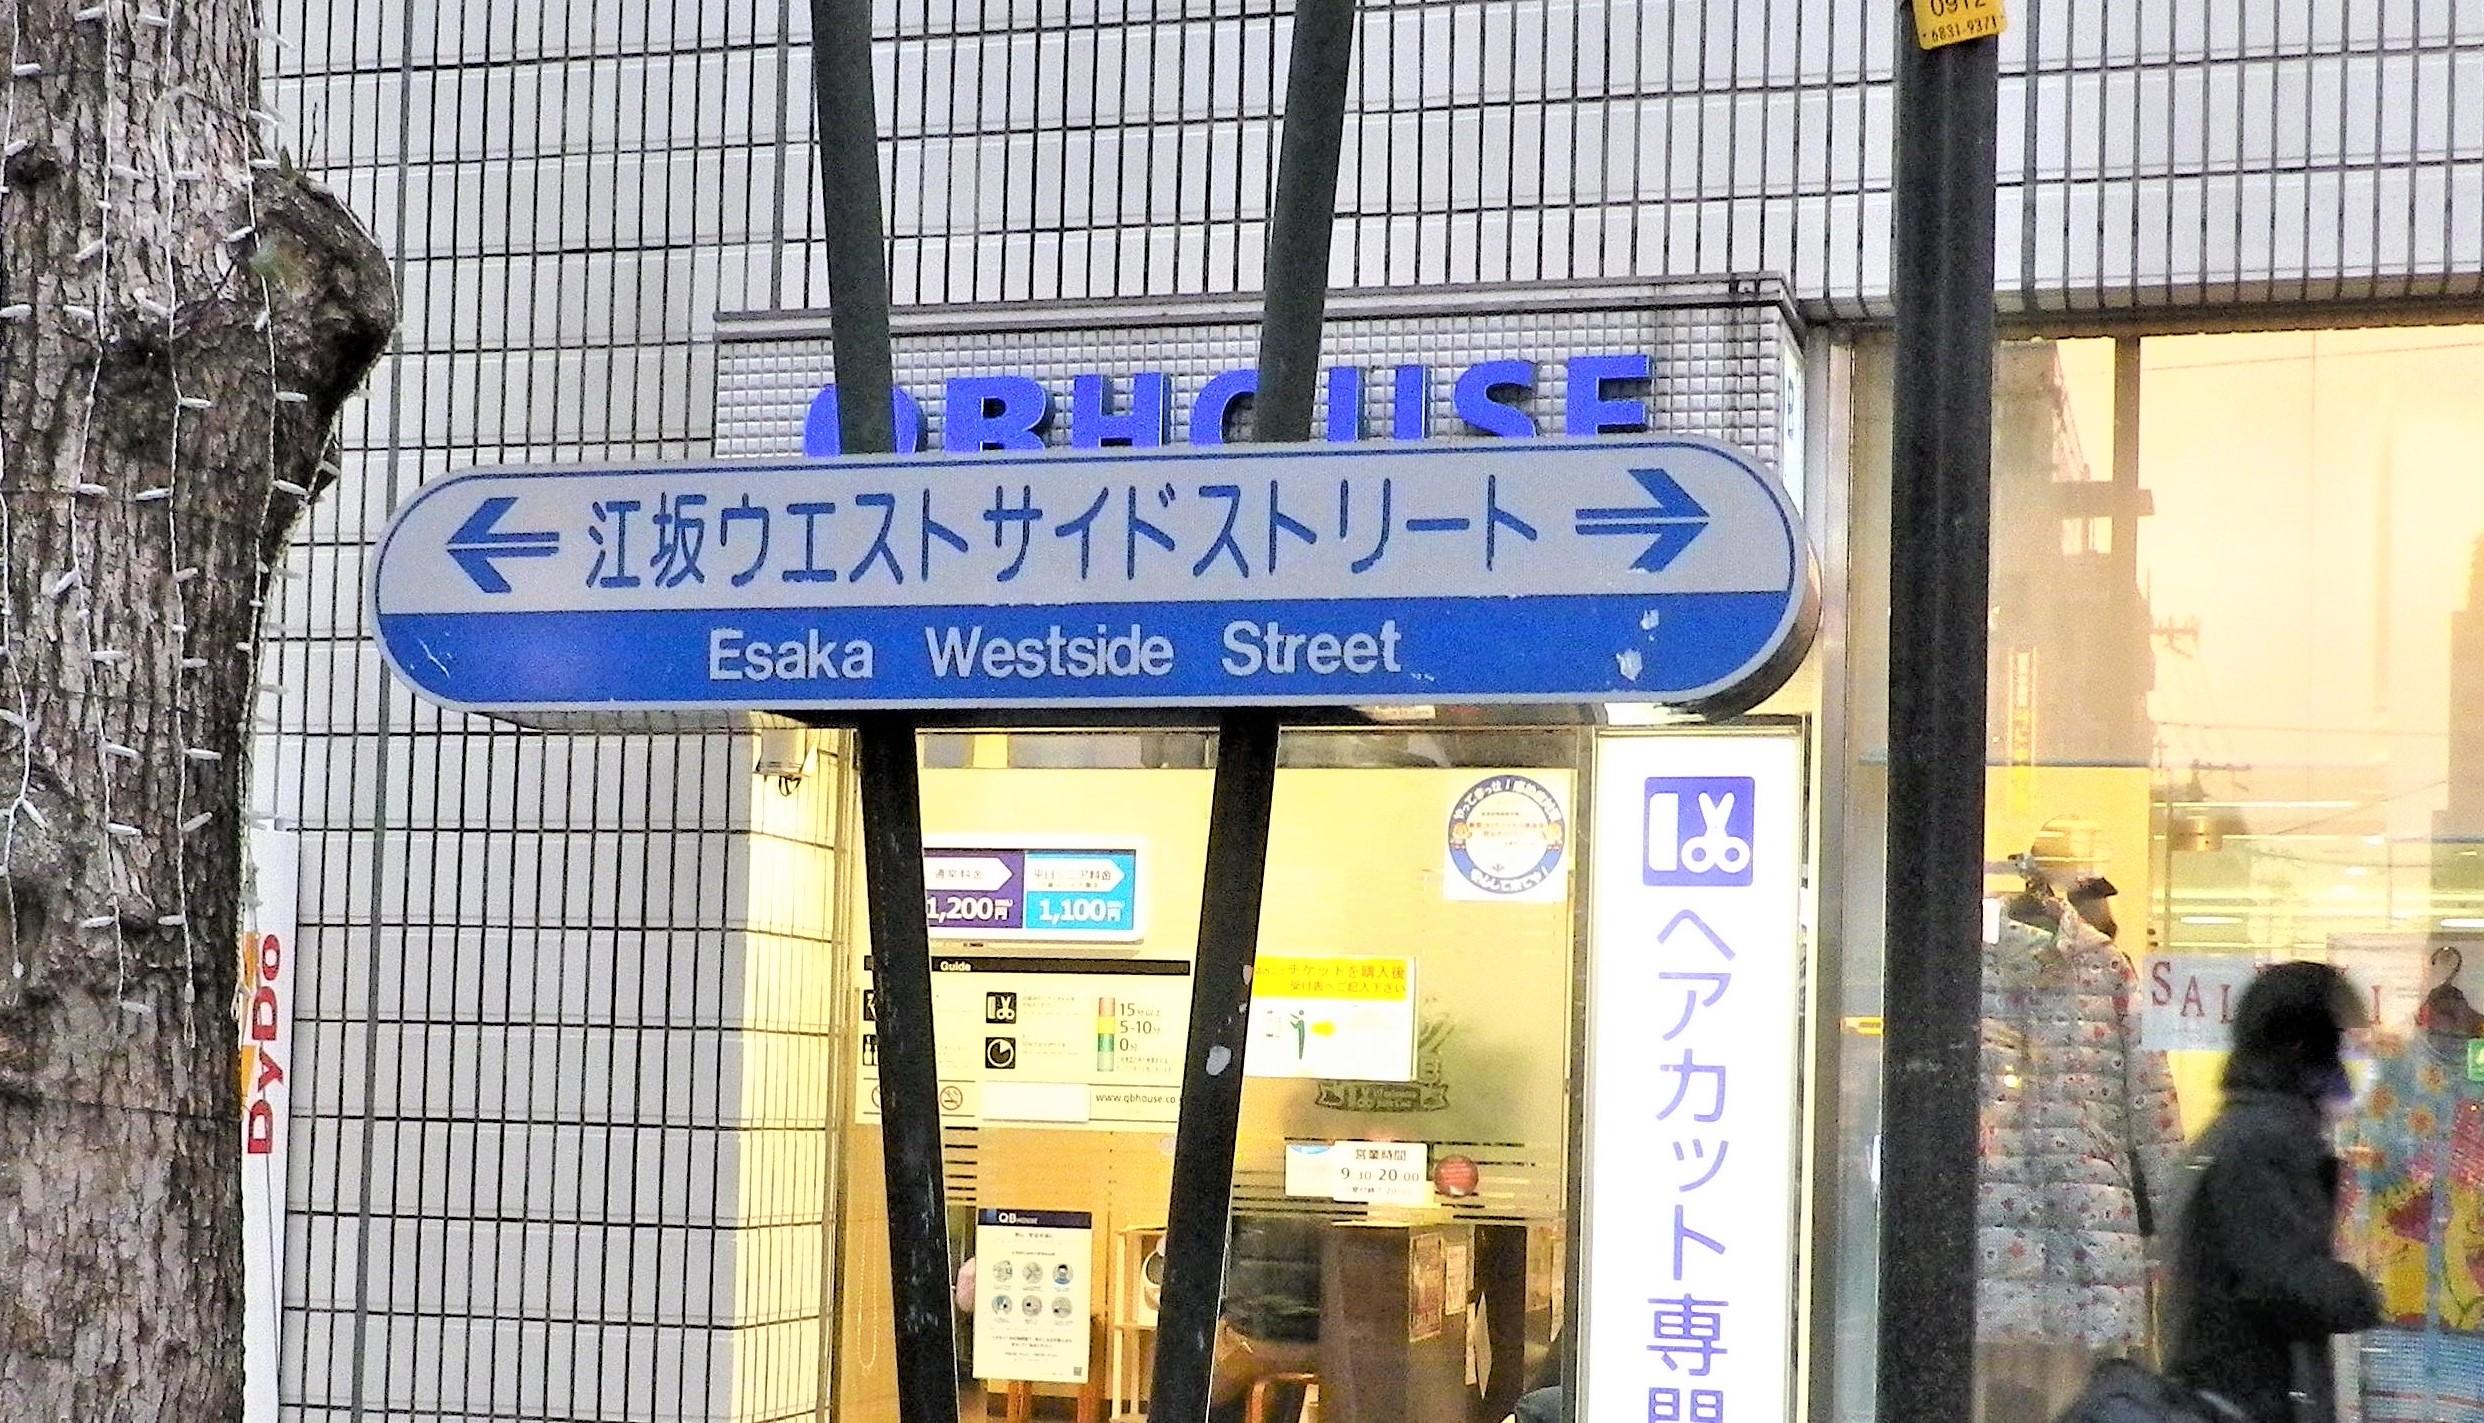 ウエストサイドストリート標識